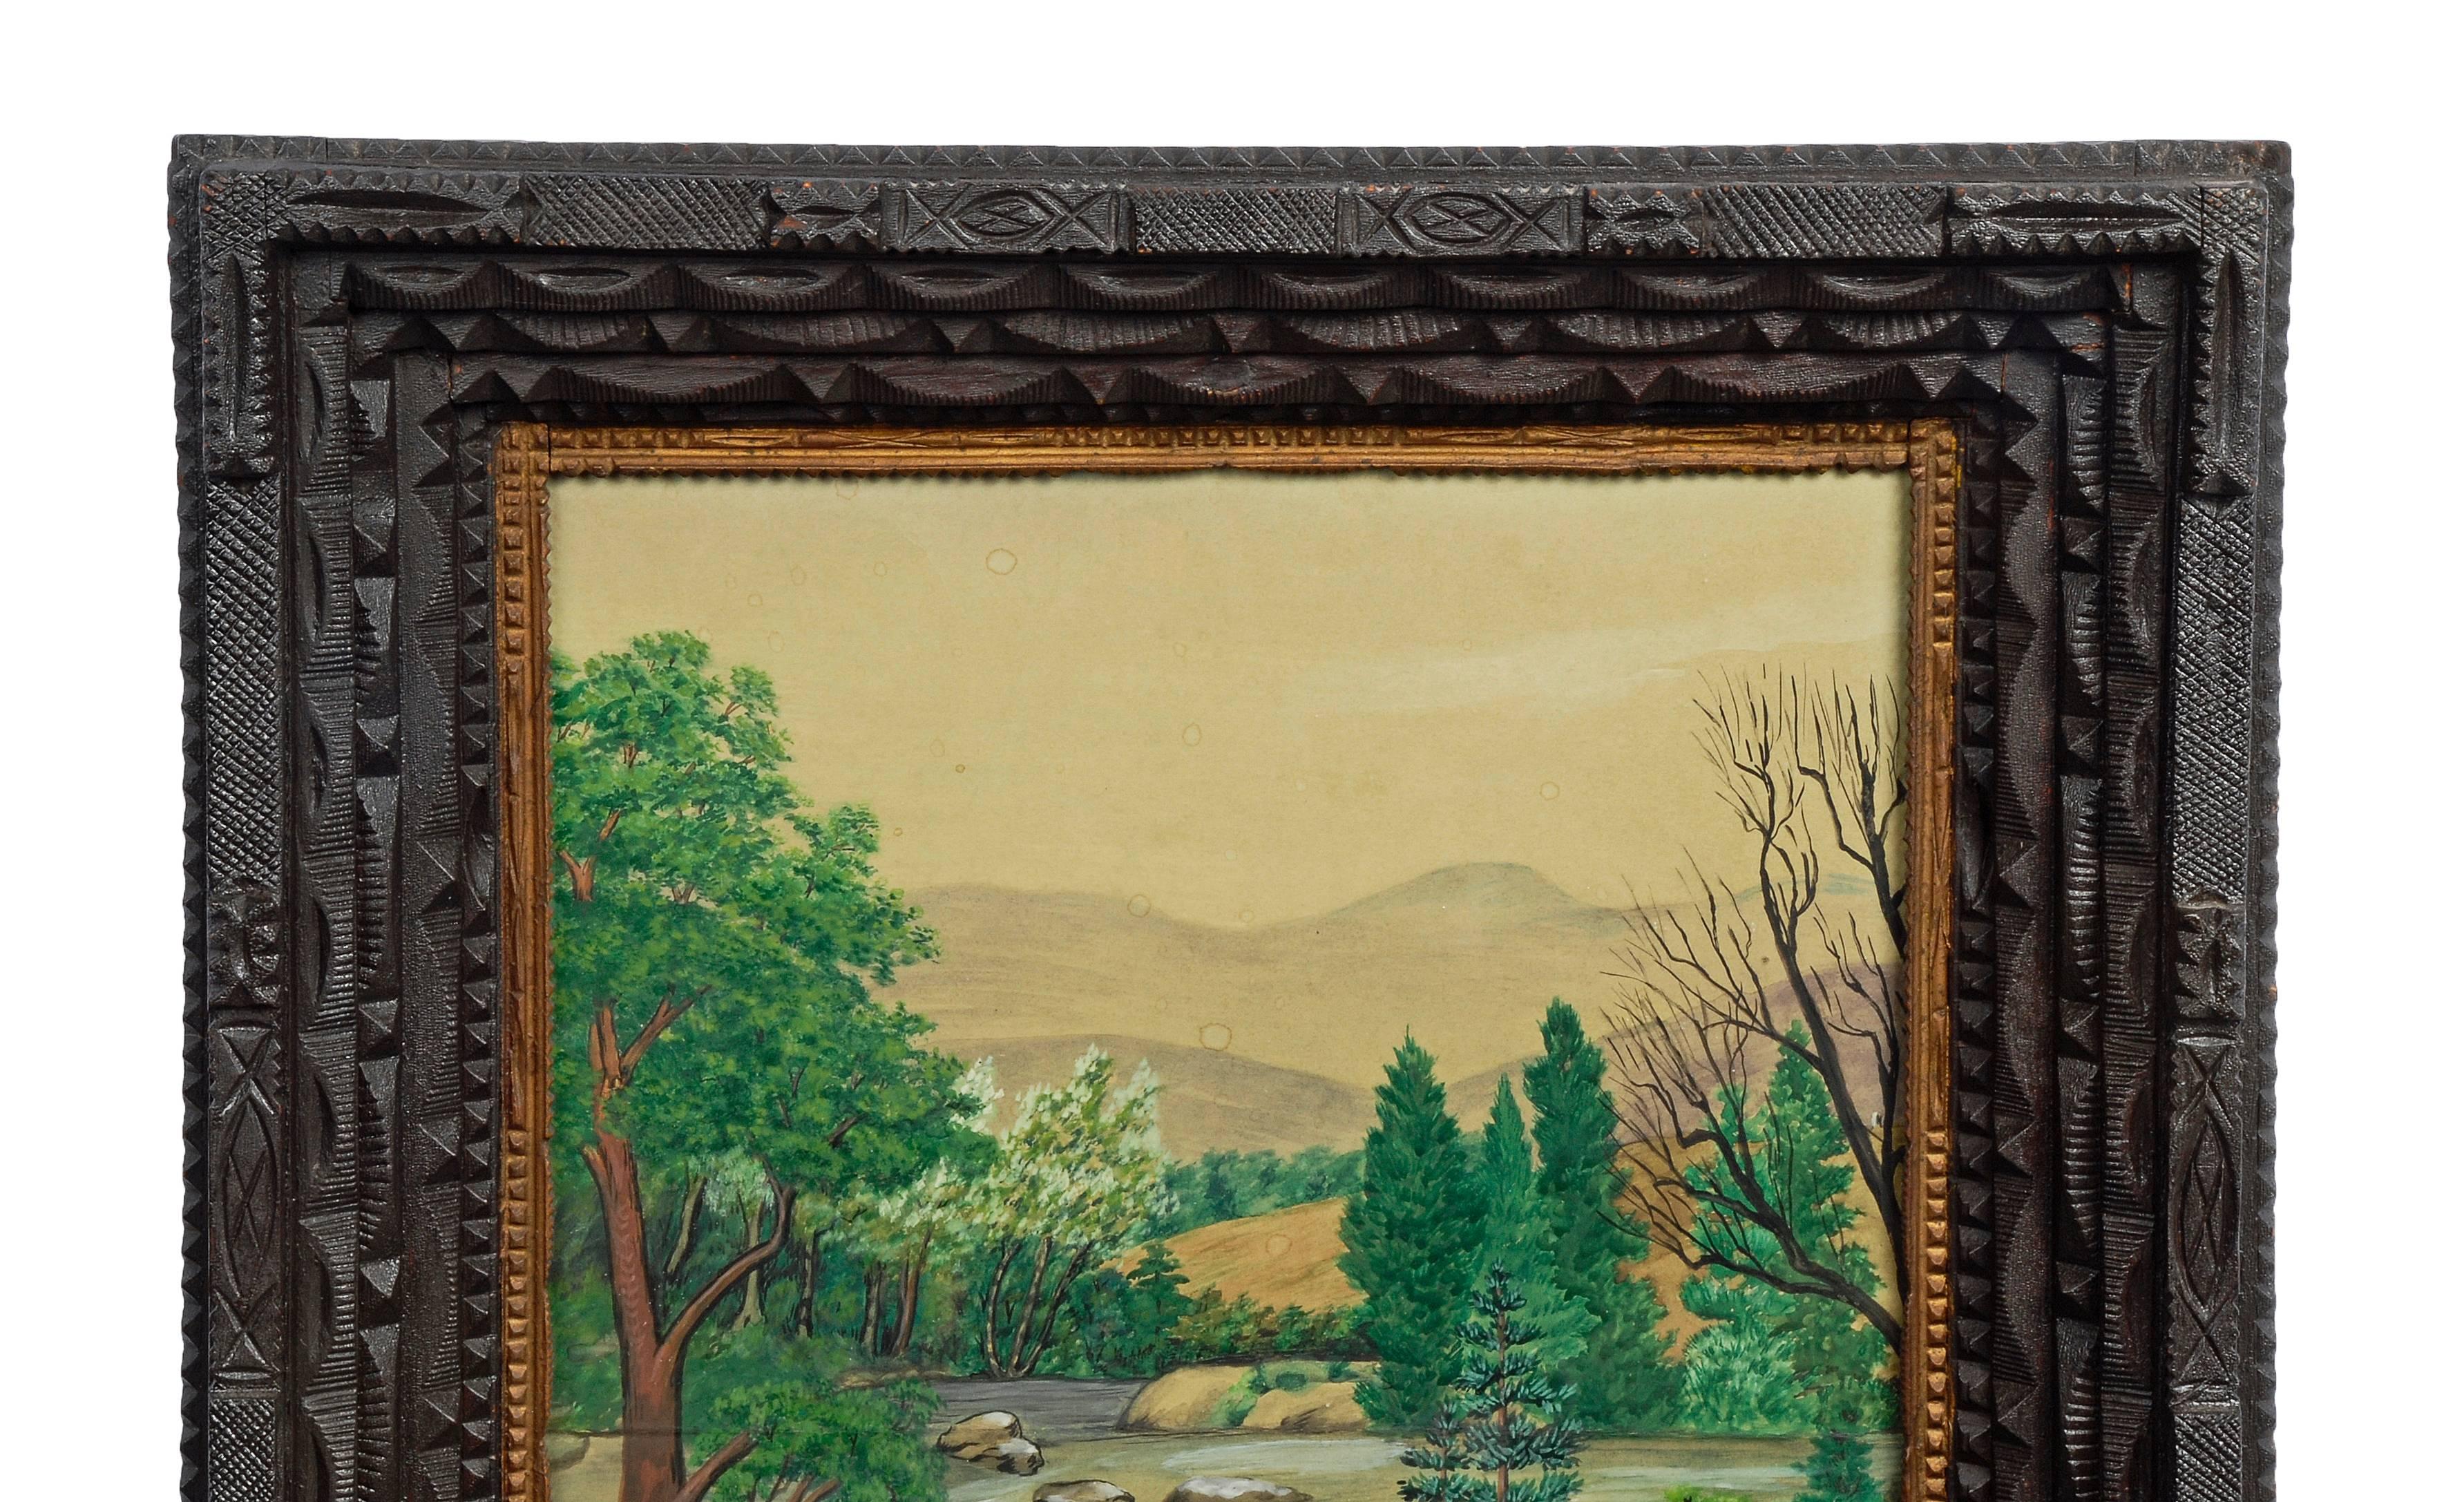 Folk Art Tramp Art Frame with Landscape Drawing For Sale